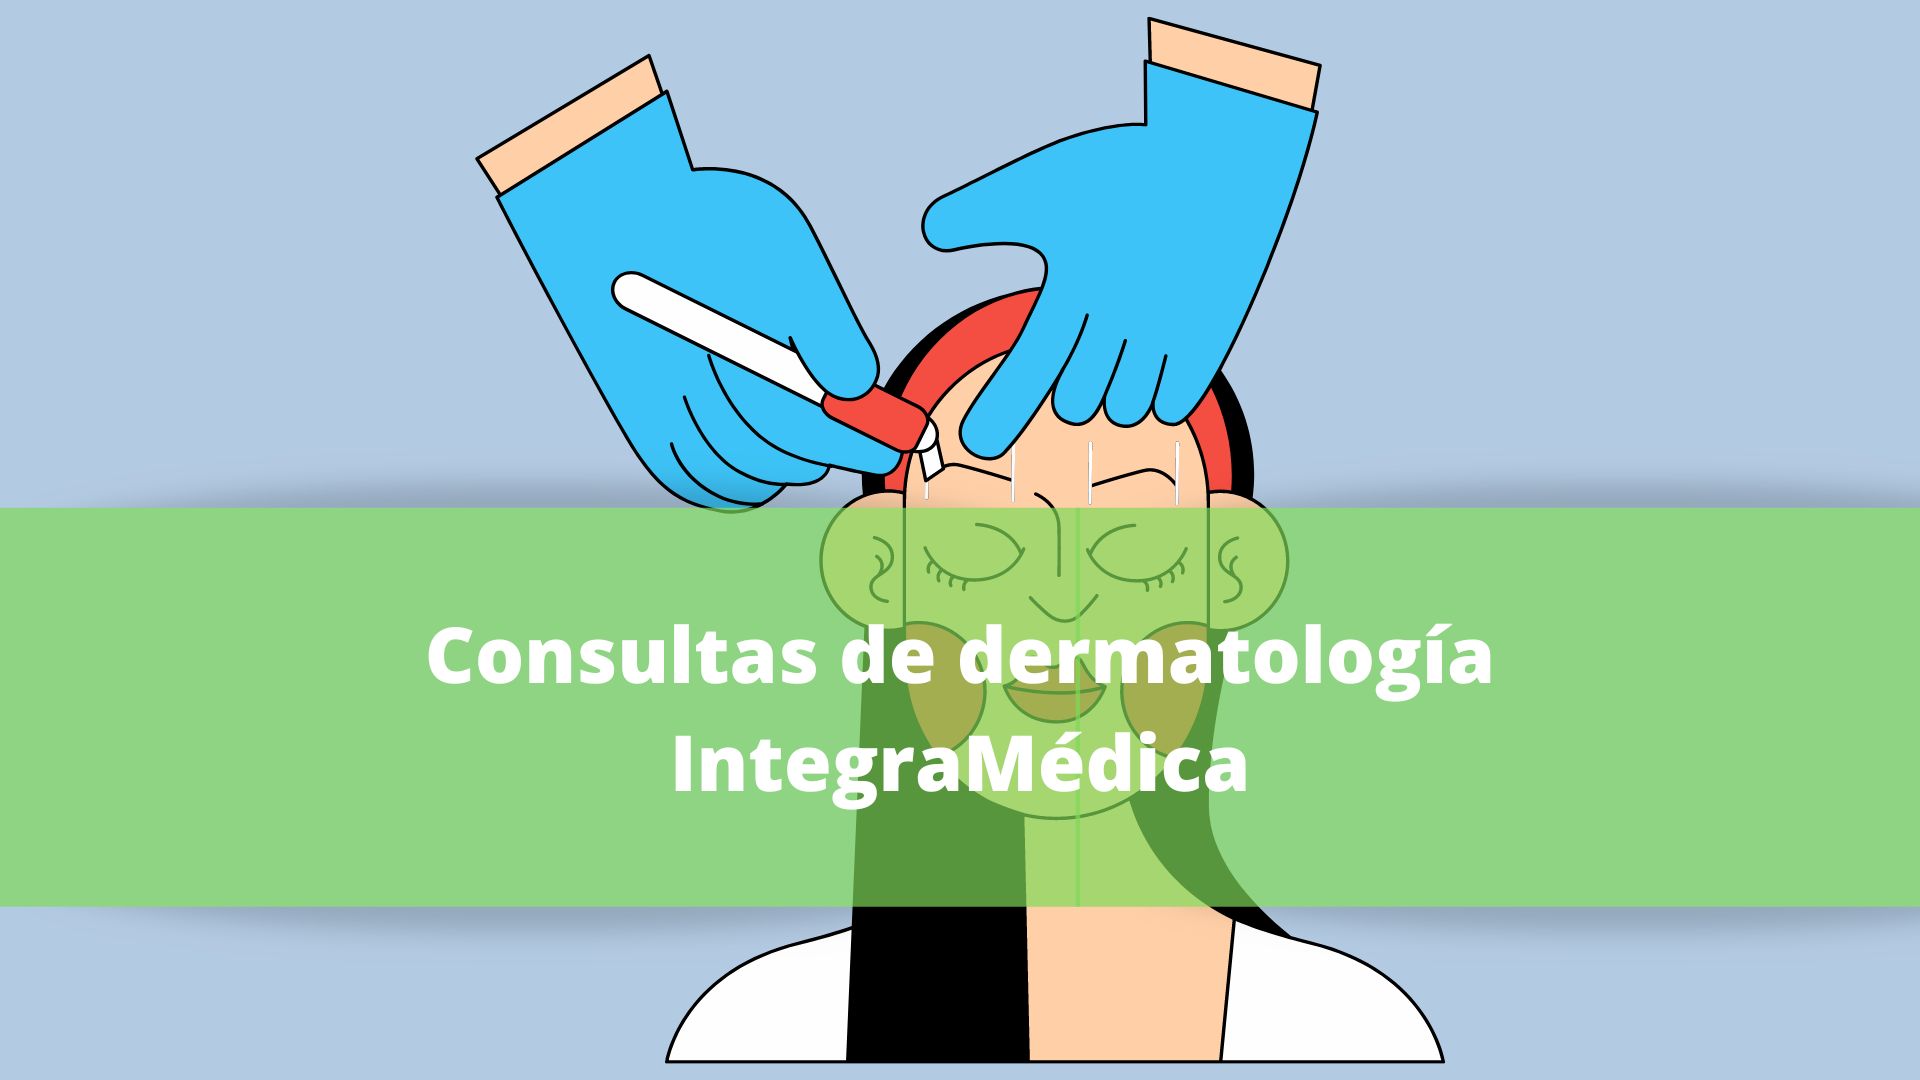 Consultas de dermatología IntegraMédica